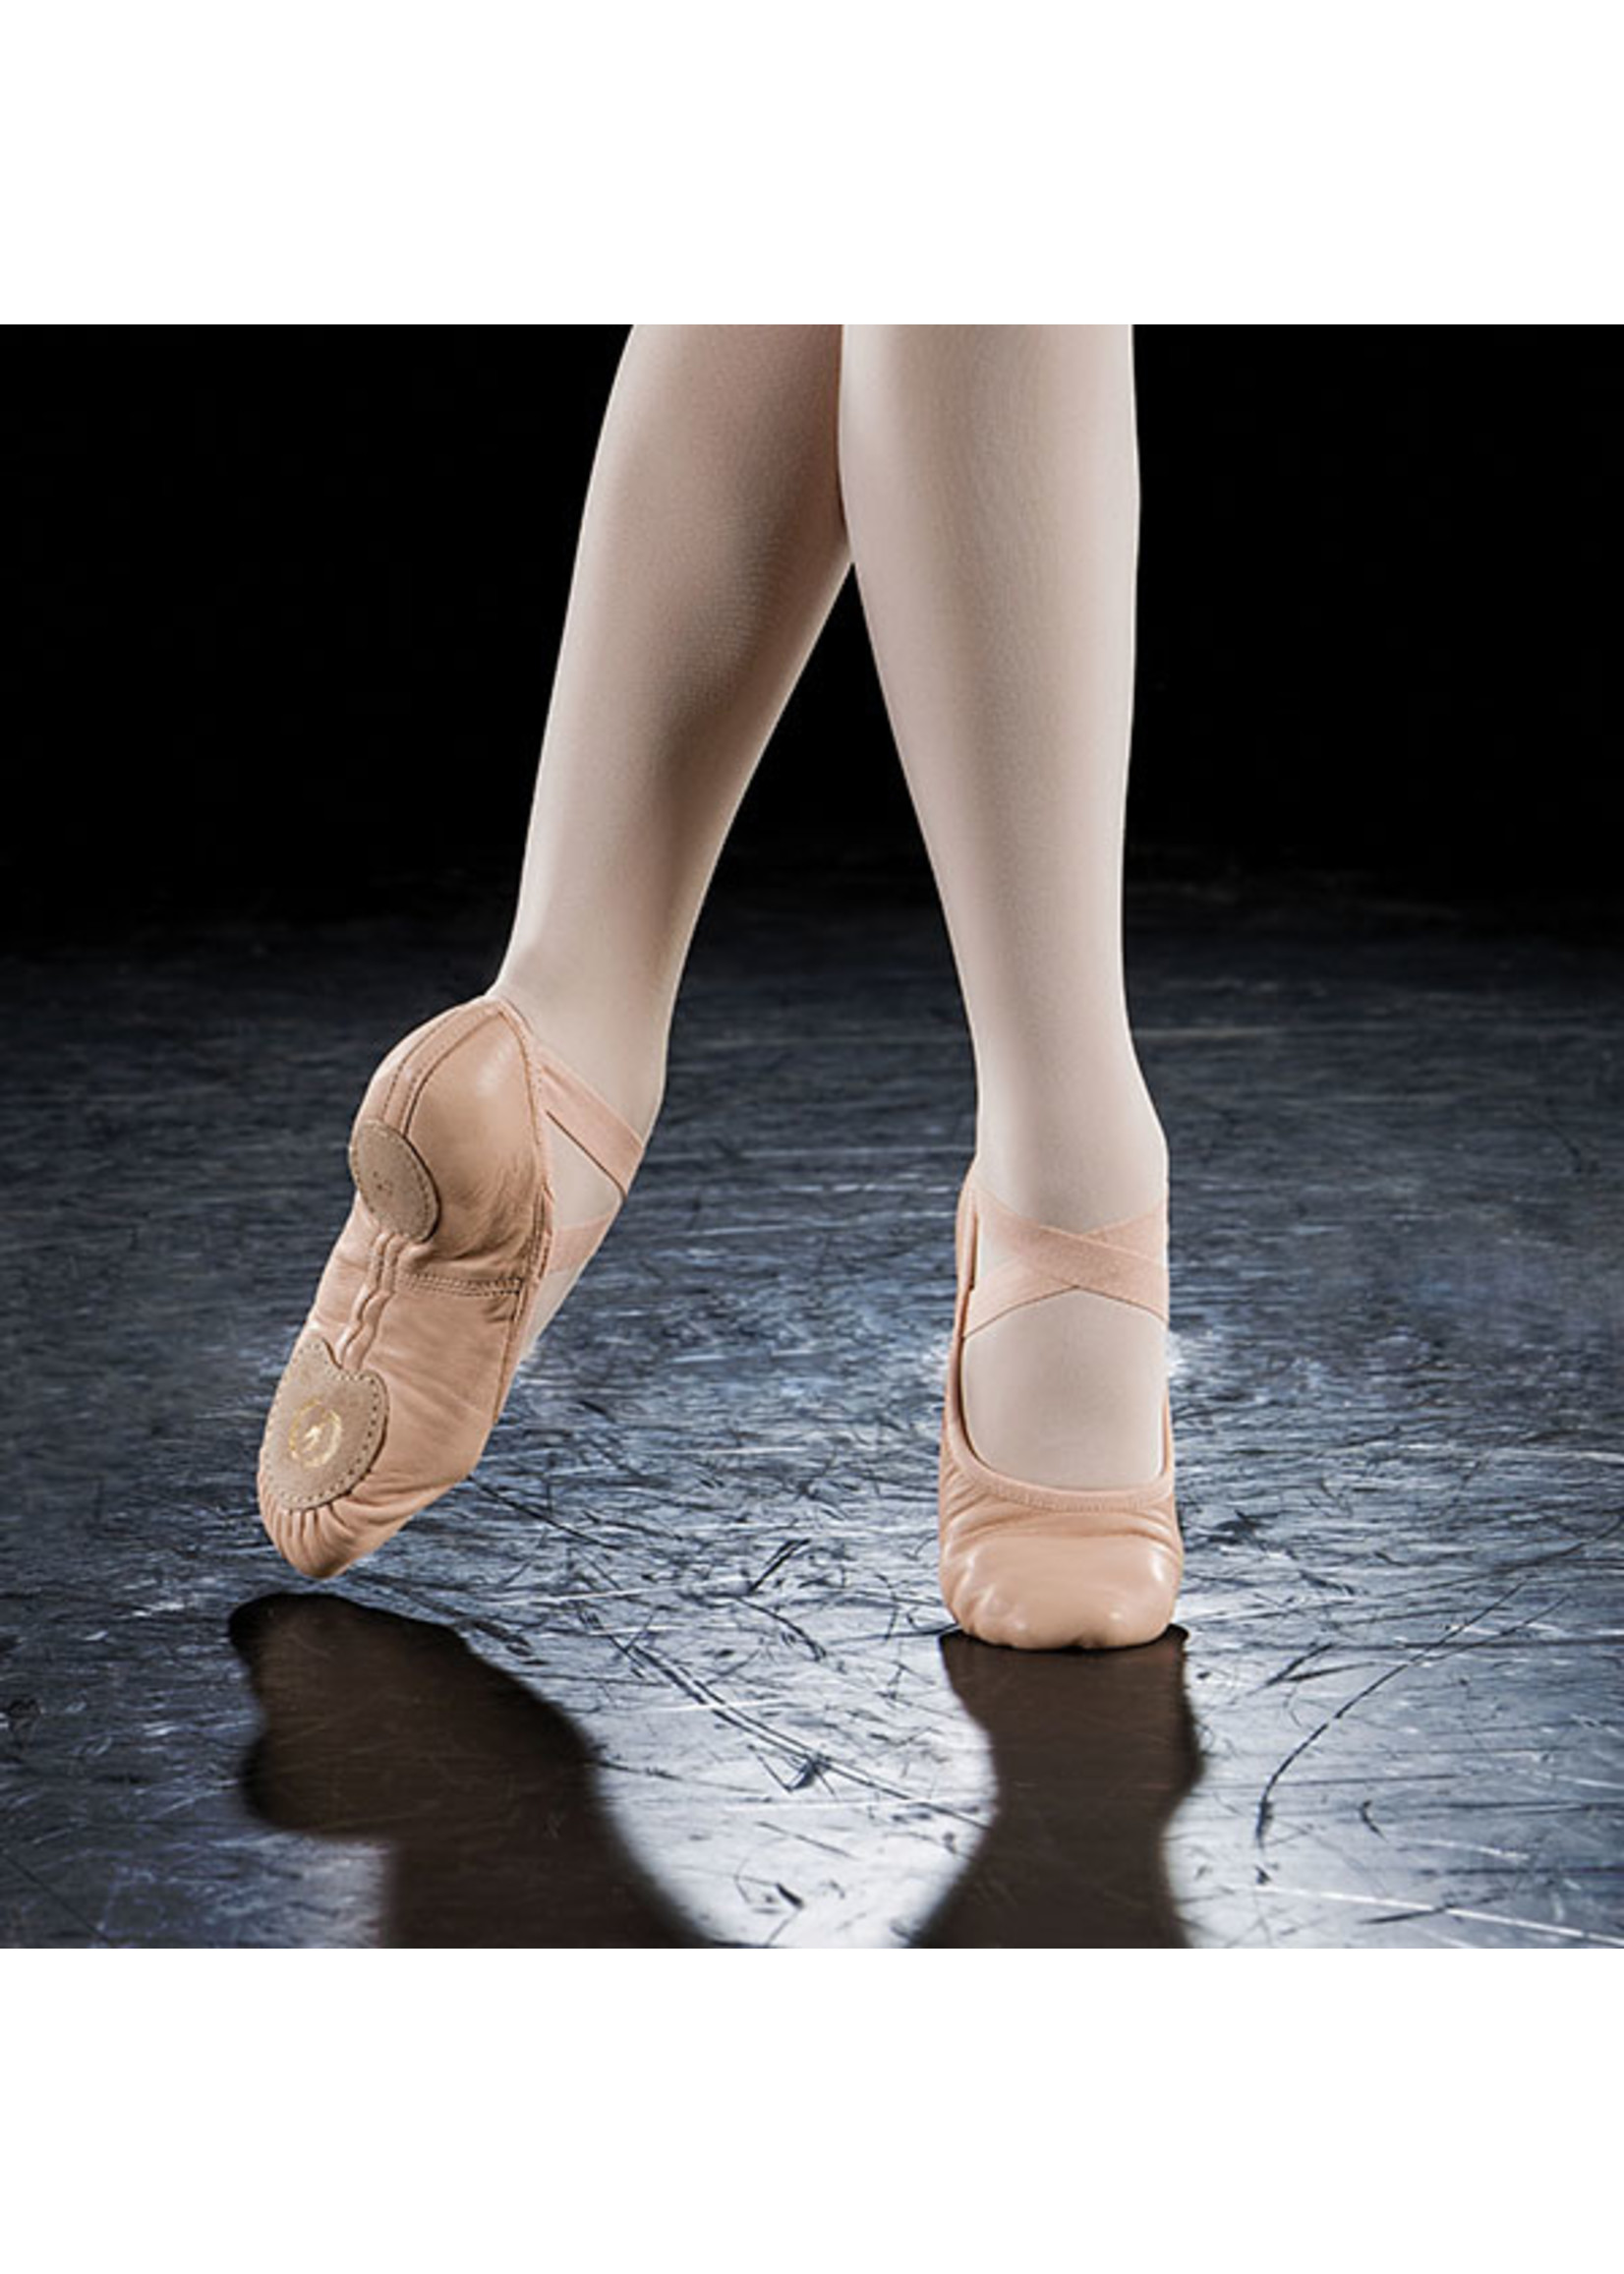 Canvas VS Leather Ballet Shoe Part Deux